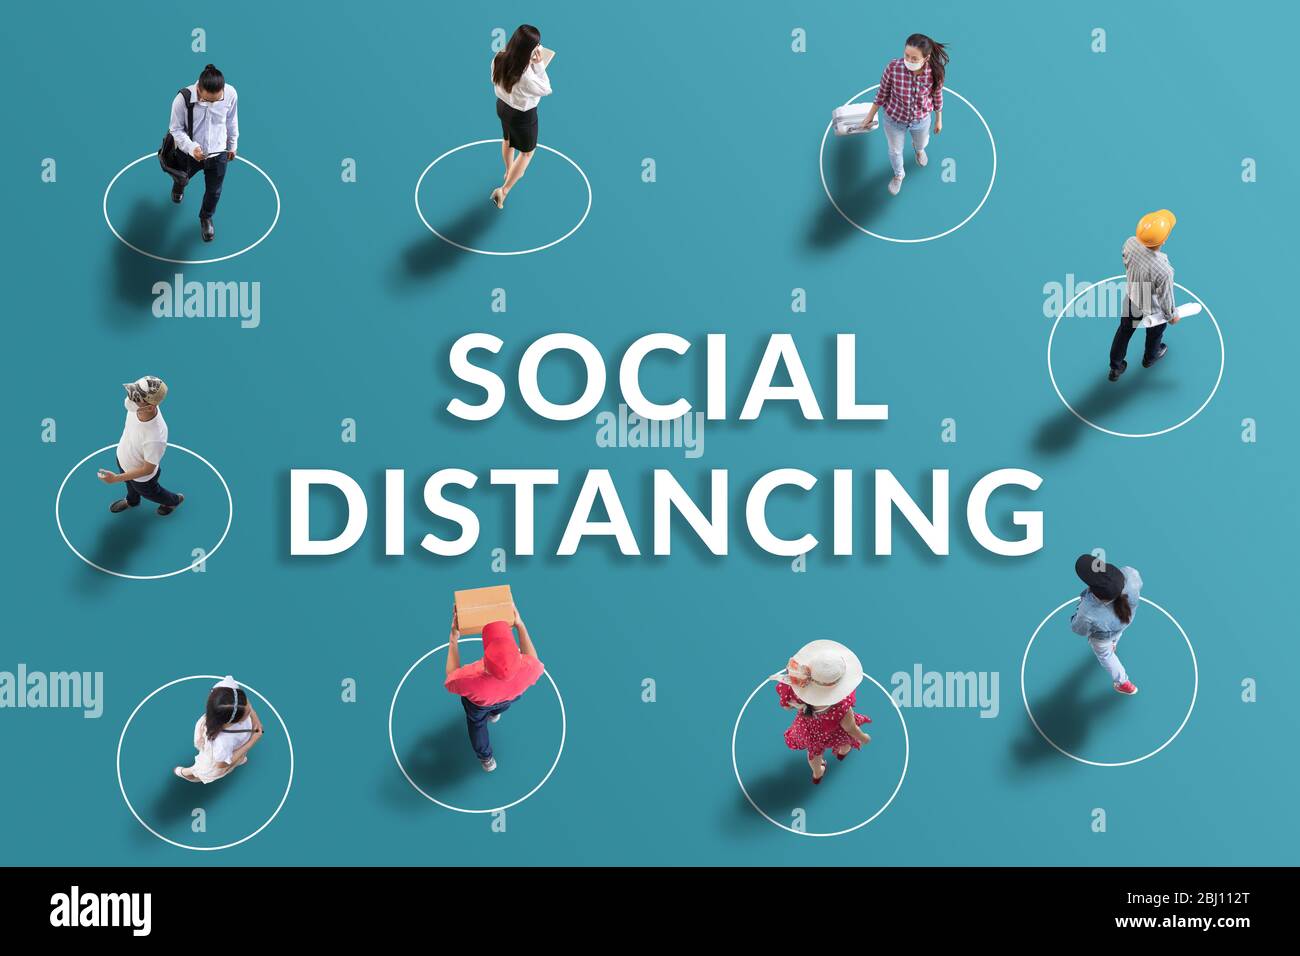 concetto di distanza sociale. persone mantenere spaziato tra di loro per distanza sociale, aumentando lo spazio fisico tra le persone per evitare di spreadin Foto Stock